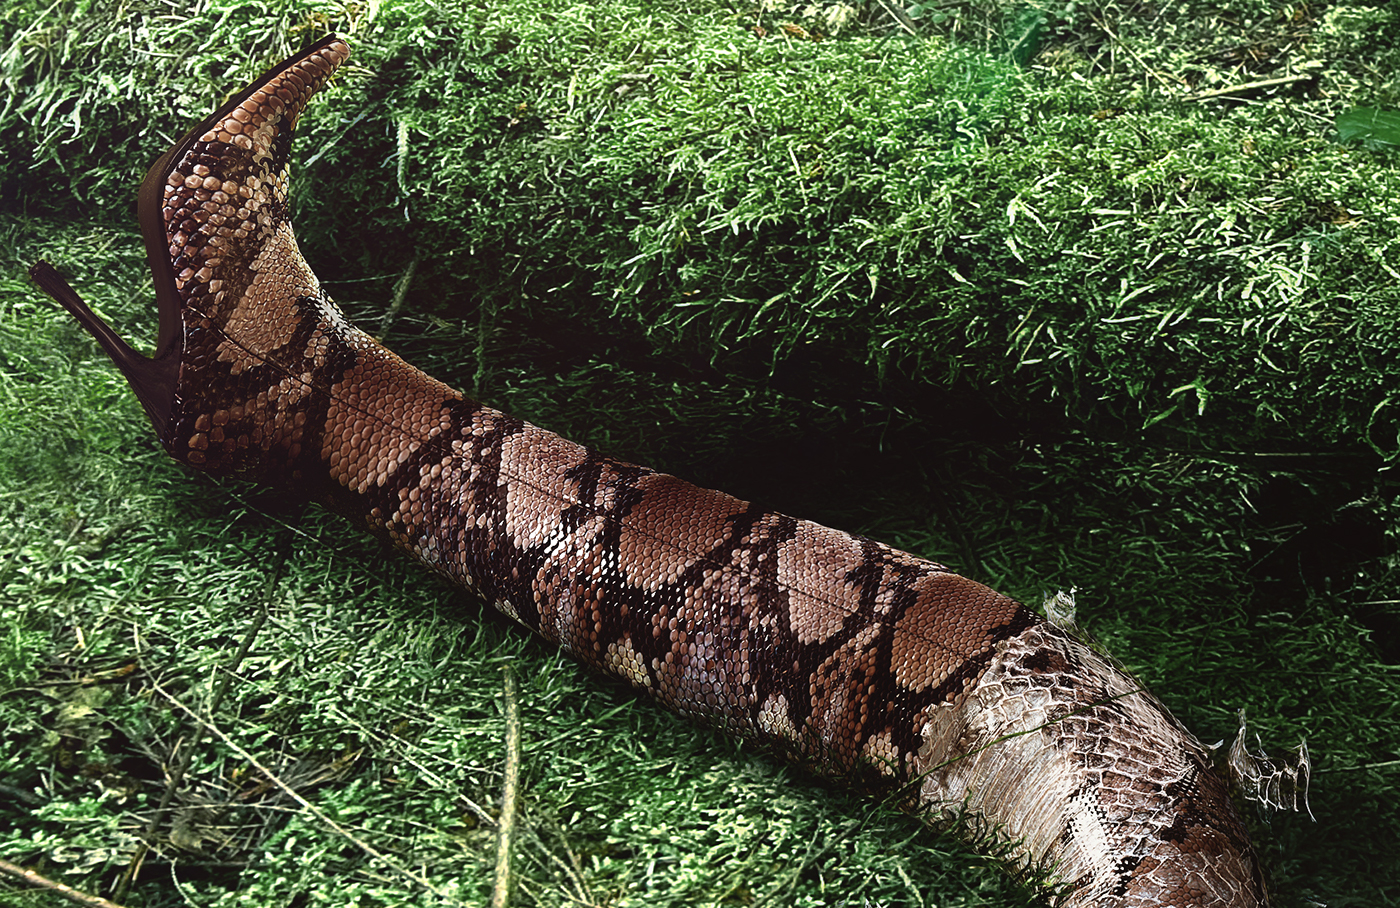 snake WWF retouch 3D CGI Cinema peru natural unnatural jungle